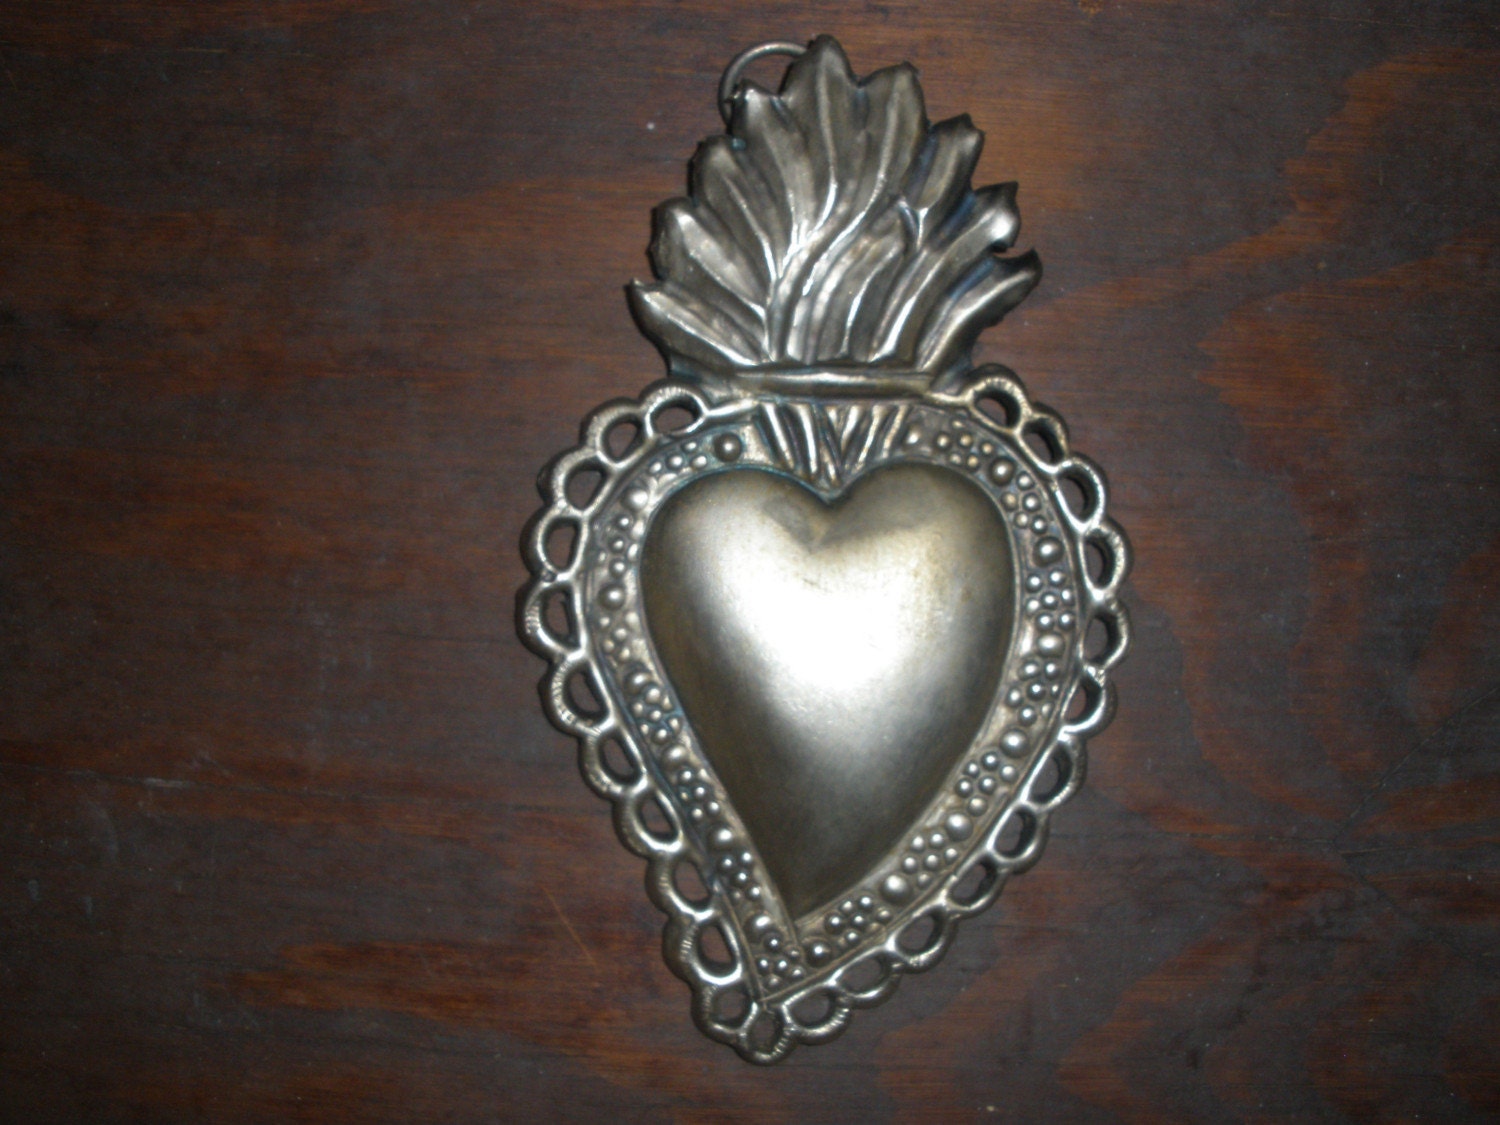 Lovely embossed French sacred heart